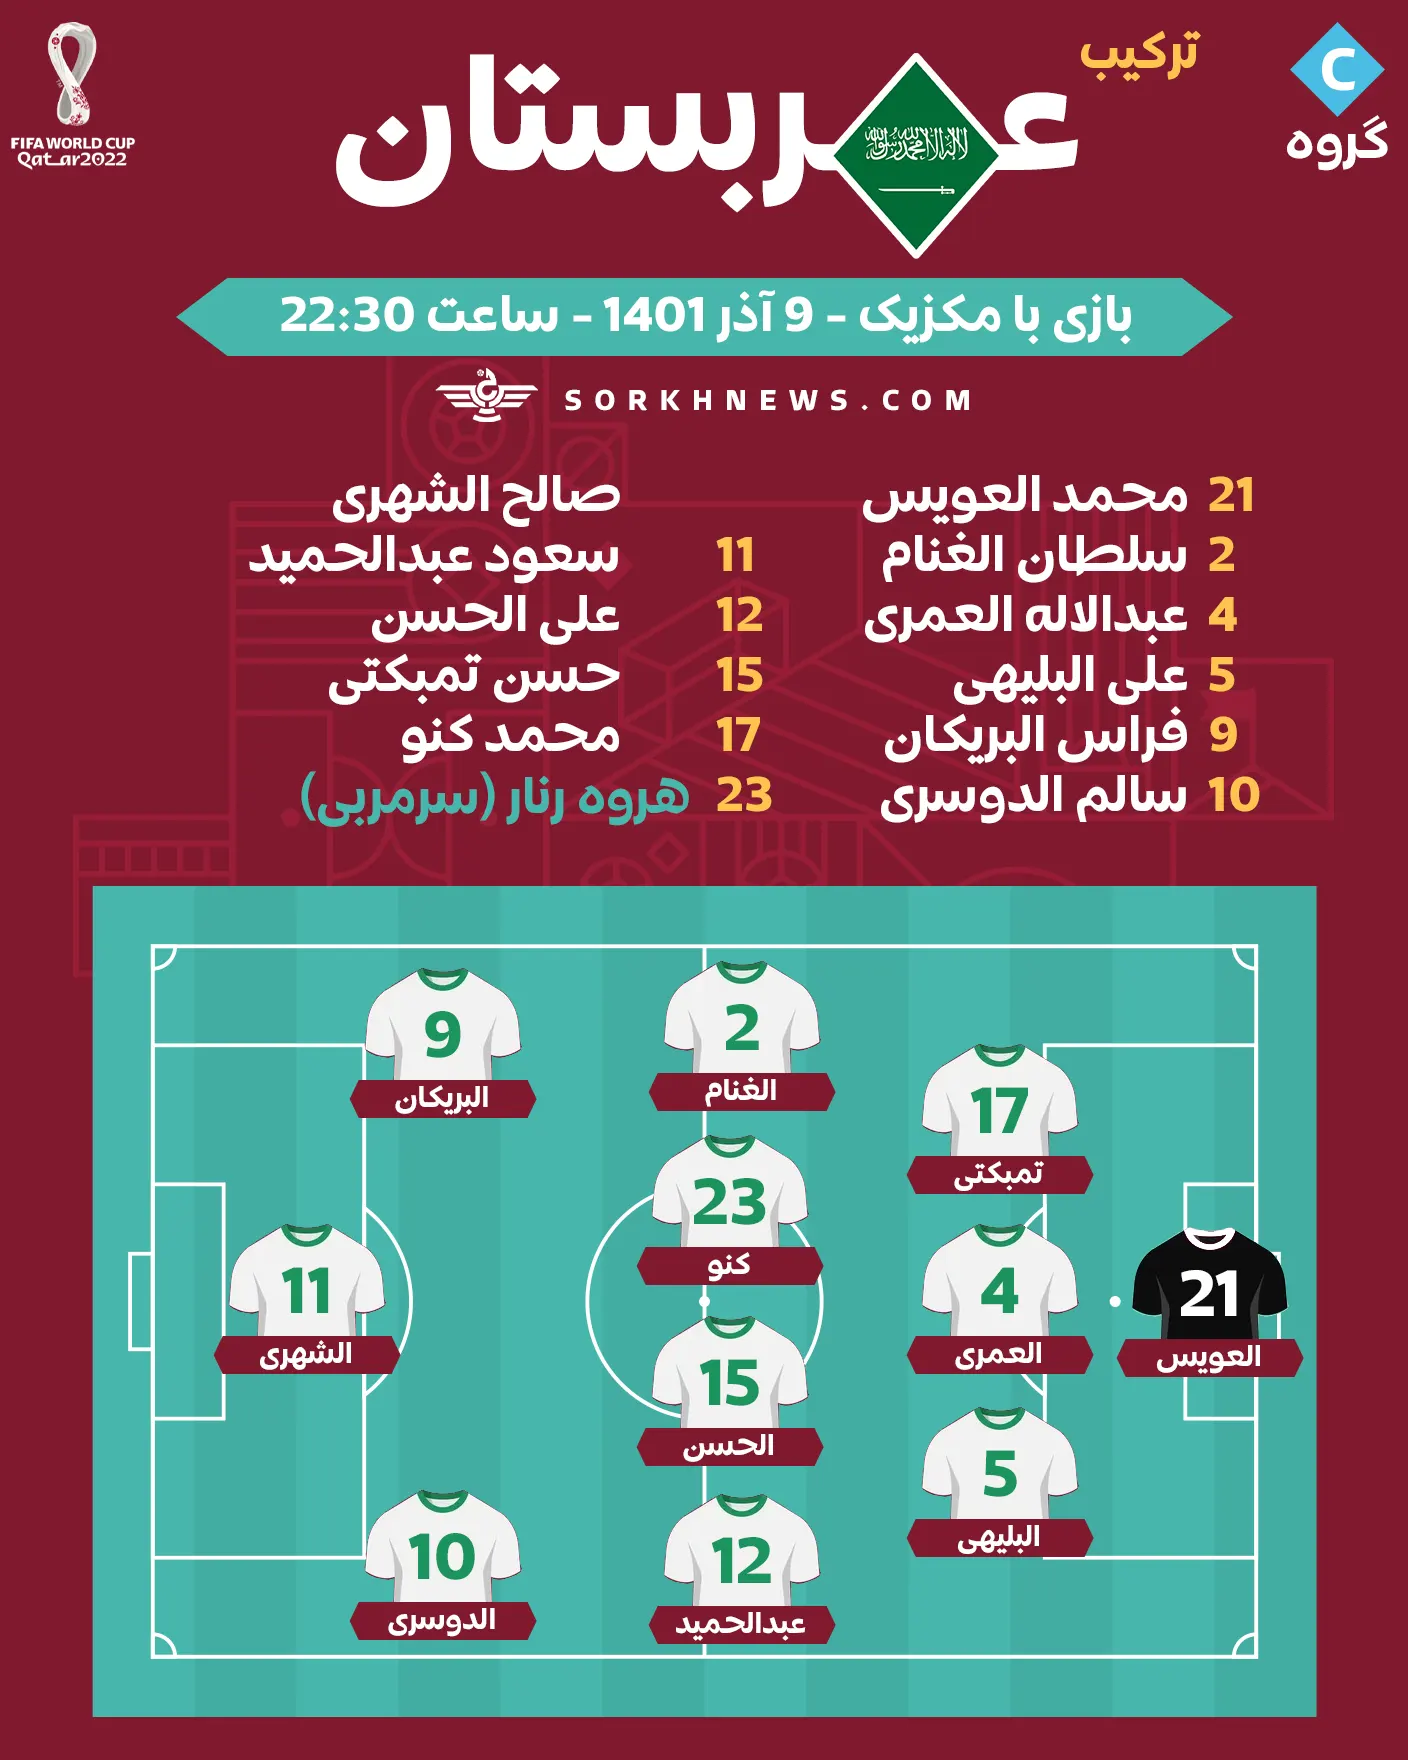 شماتیک ترکیب تیم ملی فوتبال عربستان در مقابل تیم ملی فوتبال مکزیک